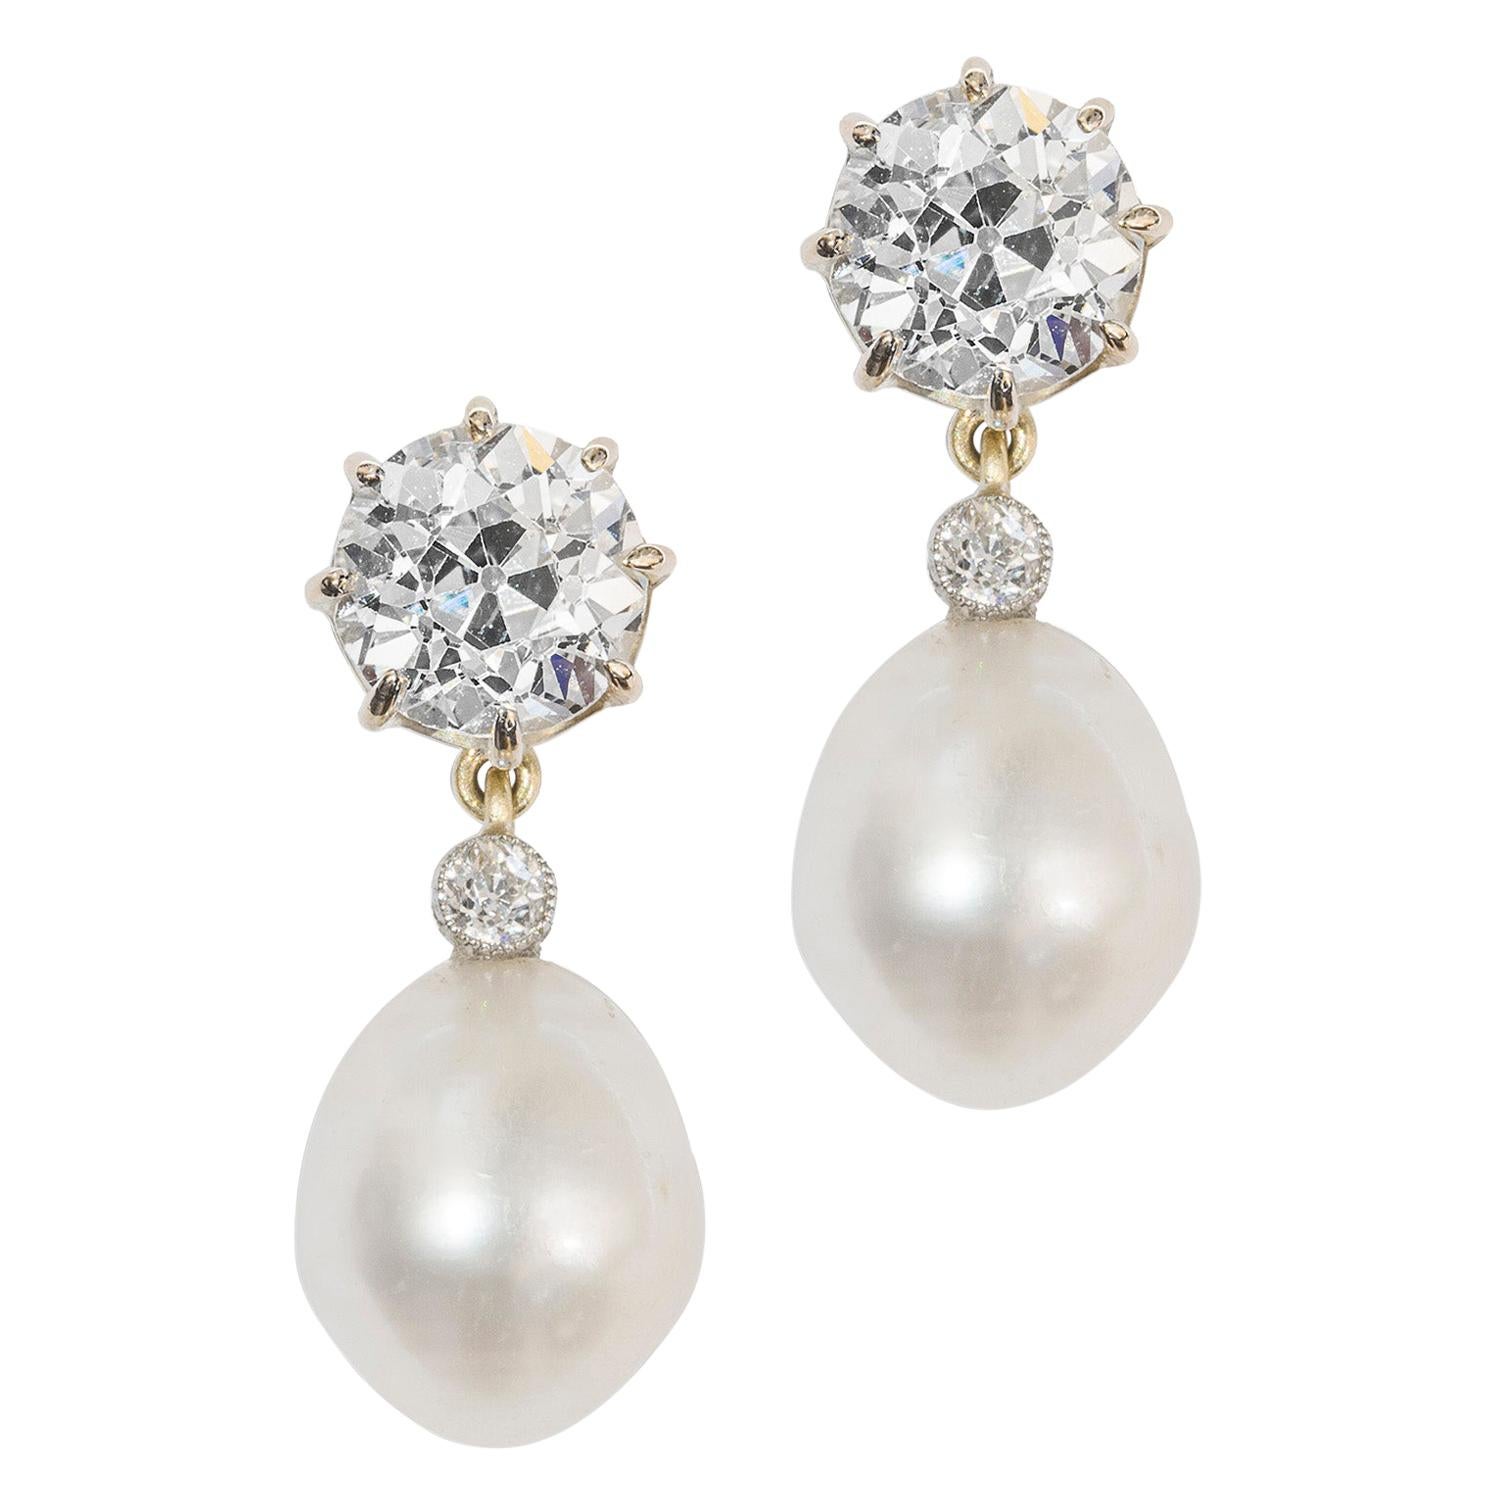 Pair of Diamond and Pearl Drop Earrings